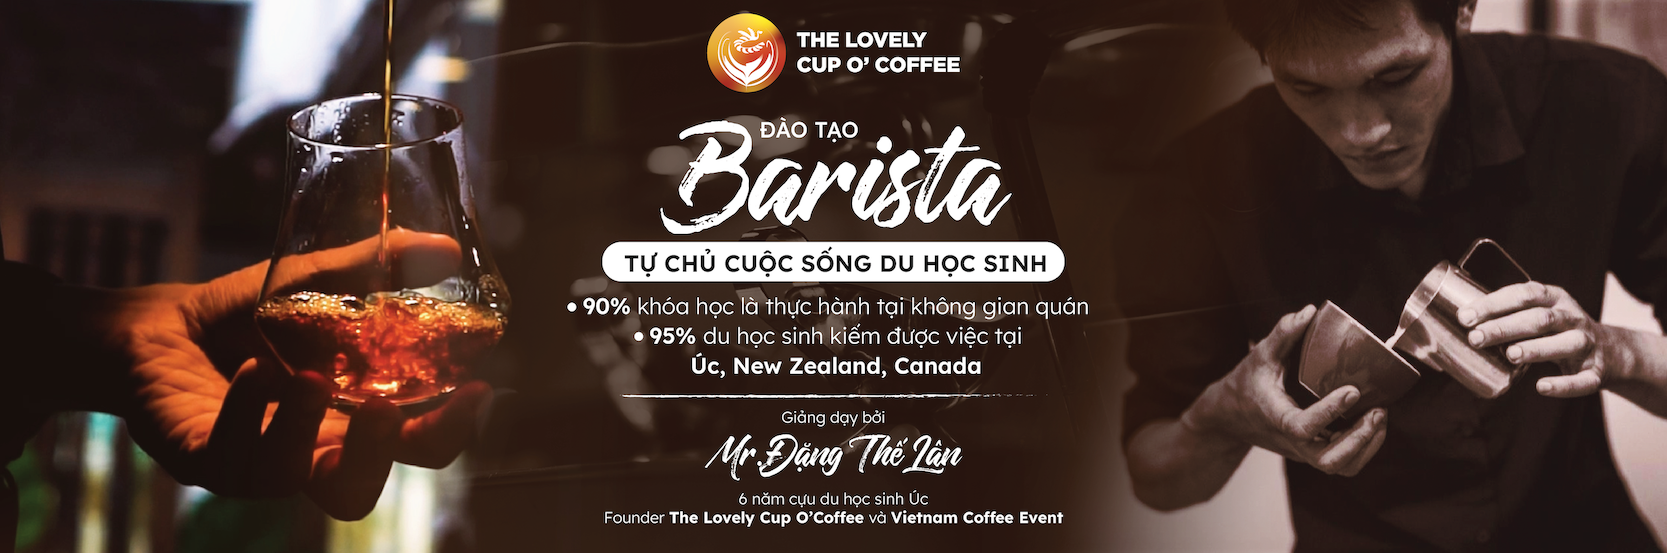 Barista Basic Việt Nam – Thuần thục nghiệp vụ Barista ngay sau 8 buổi học!